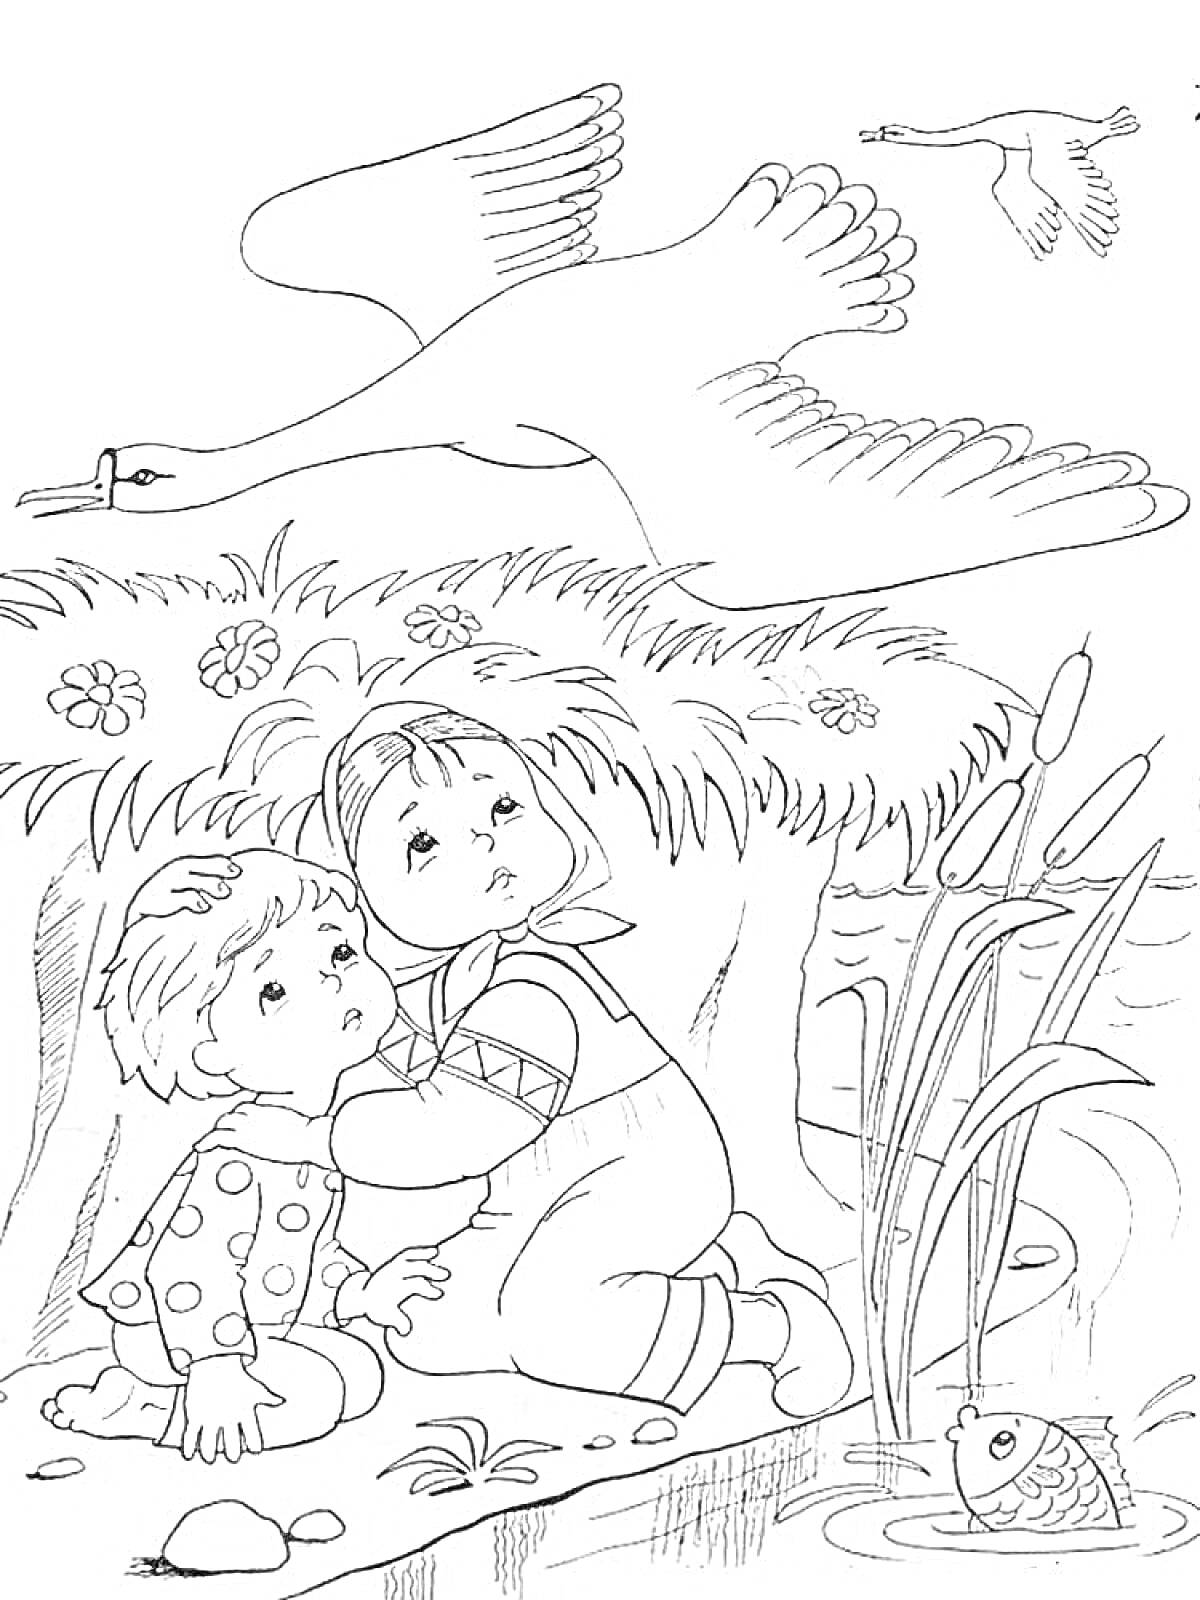 Раскраска Дети прячутся от лебедей в зарослях травы у воды с рыбкой